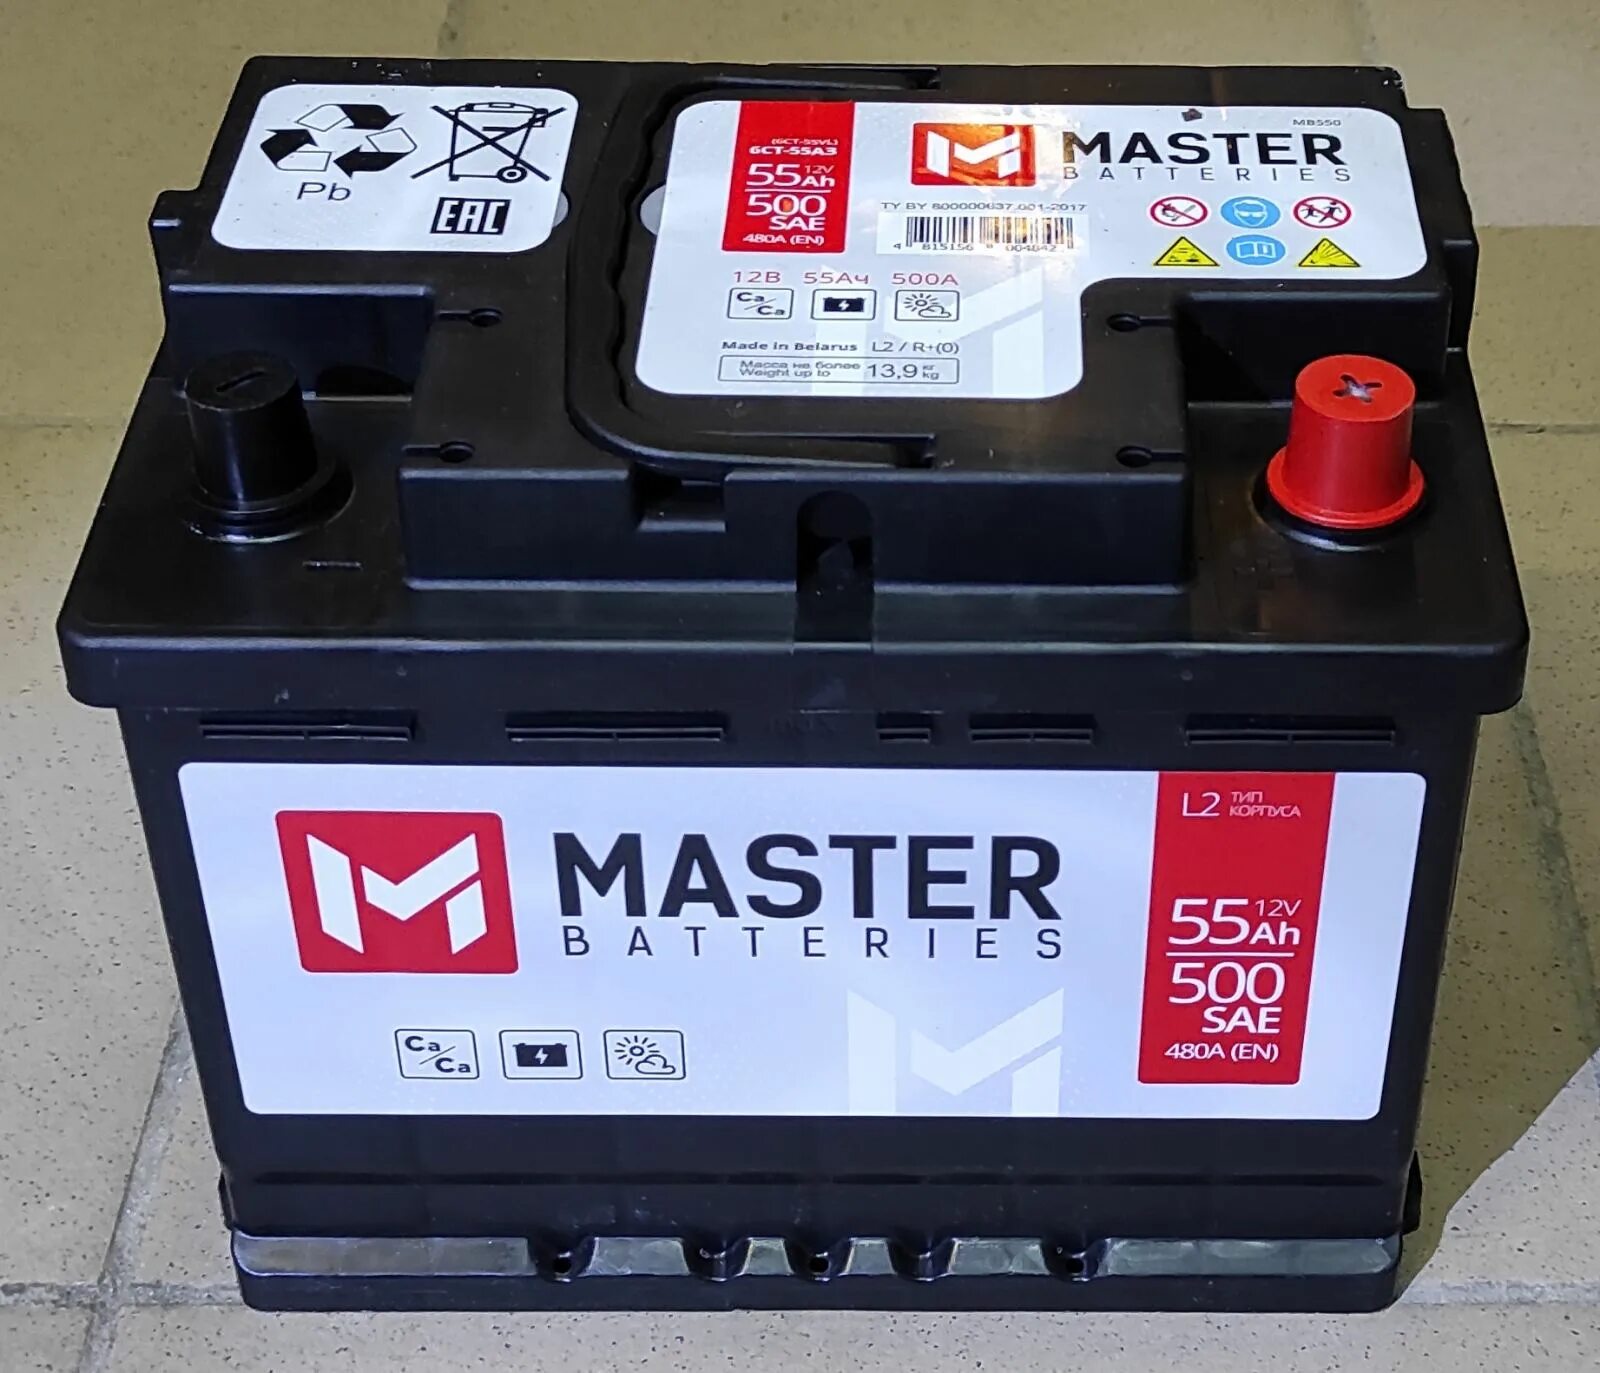 Master batteries. Аккумулятор Master batteries140 а/ч. Аккумулятор Master Batteries 55 a/h. Master Batteries (60 Ah). Master Batteries аккумулятор 16v.